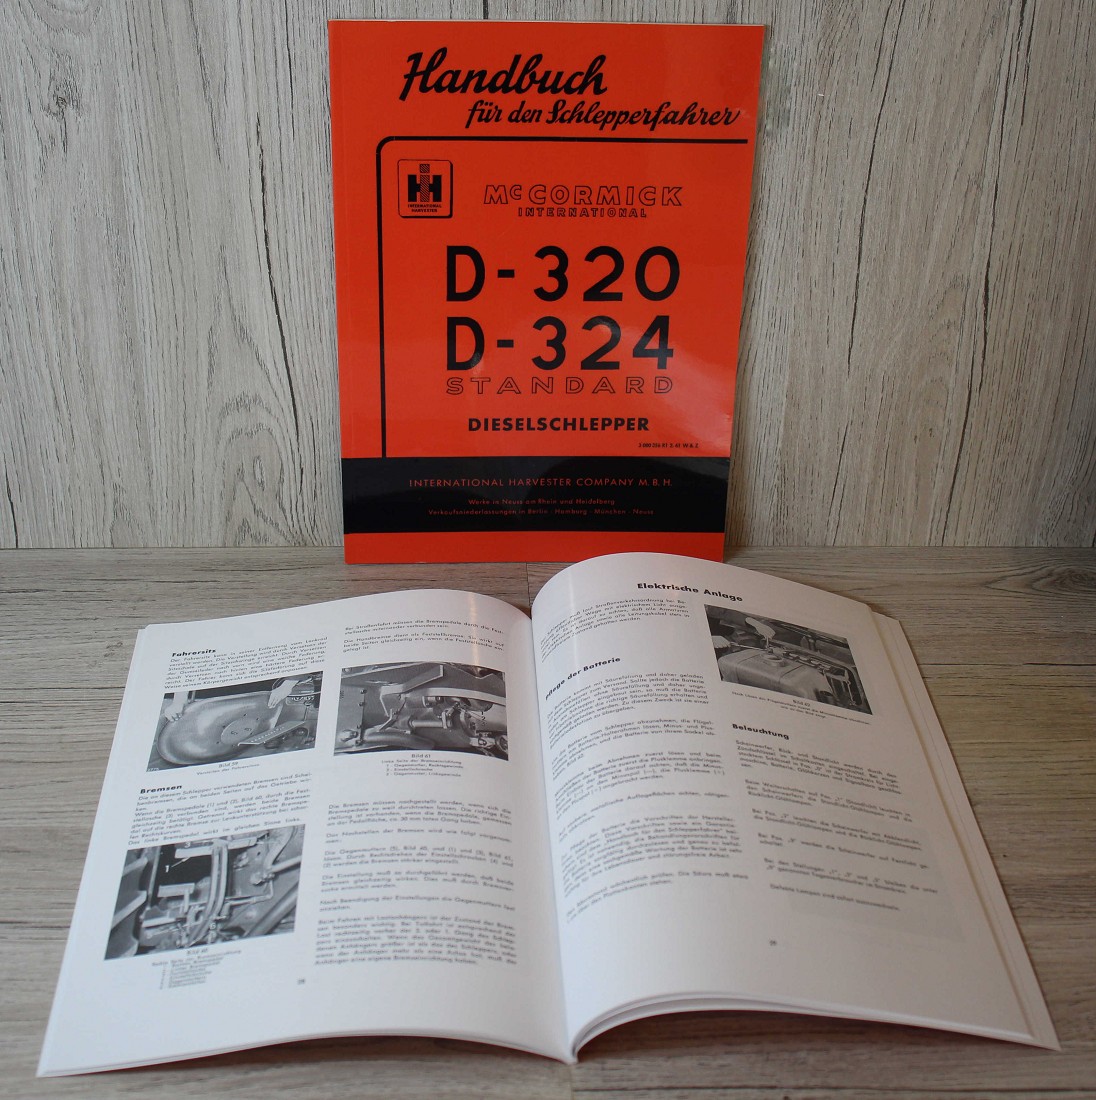 McCormic Handbuch für den Schlepperfahrer D-432/439 Traktor Bedienungsanleitung